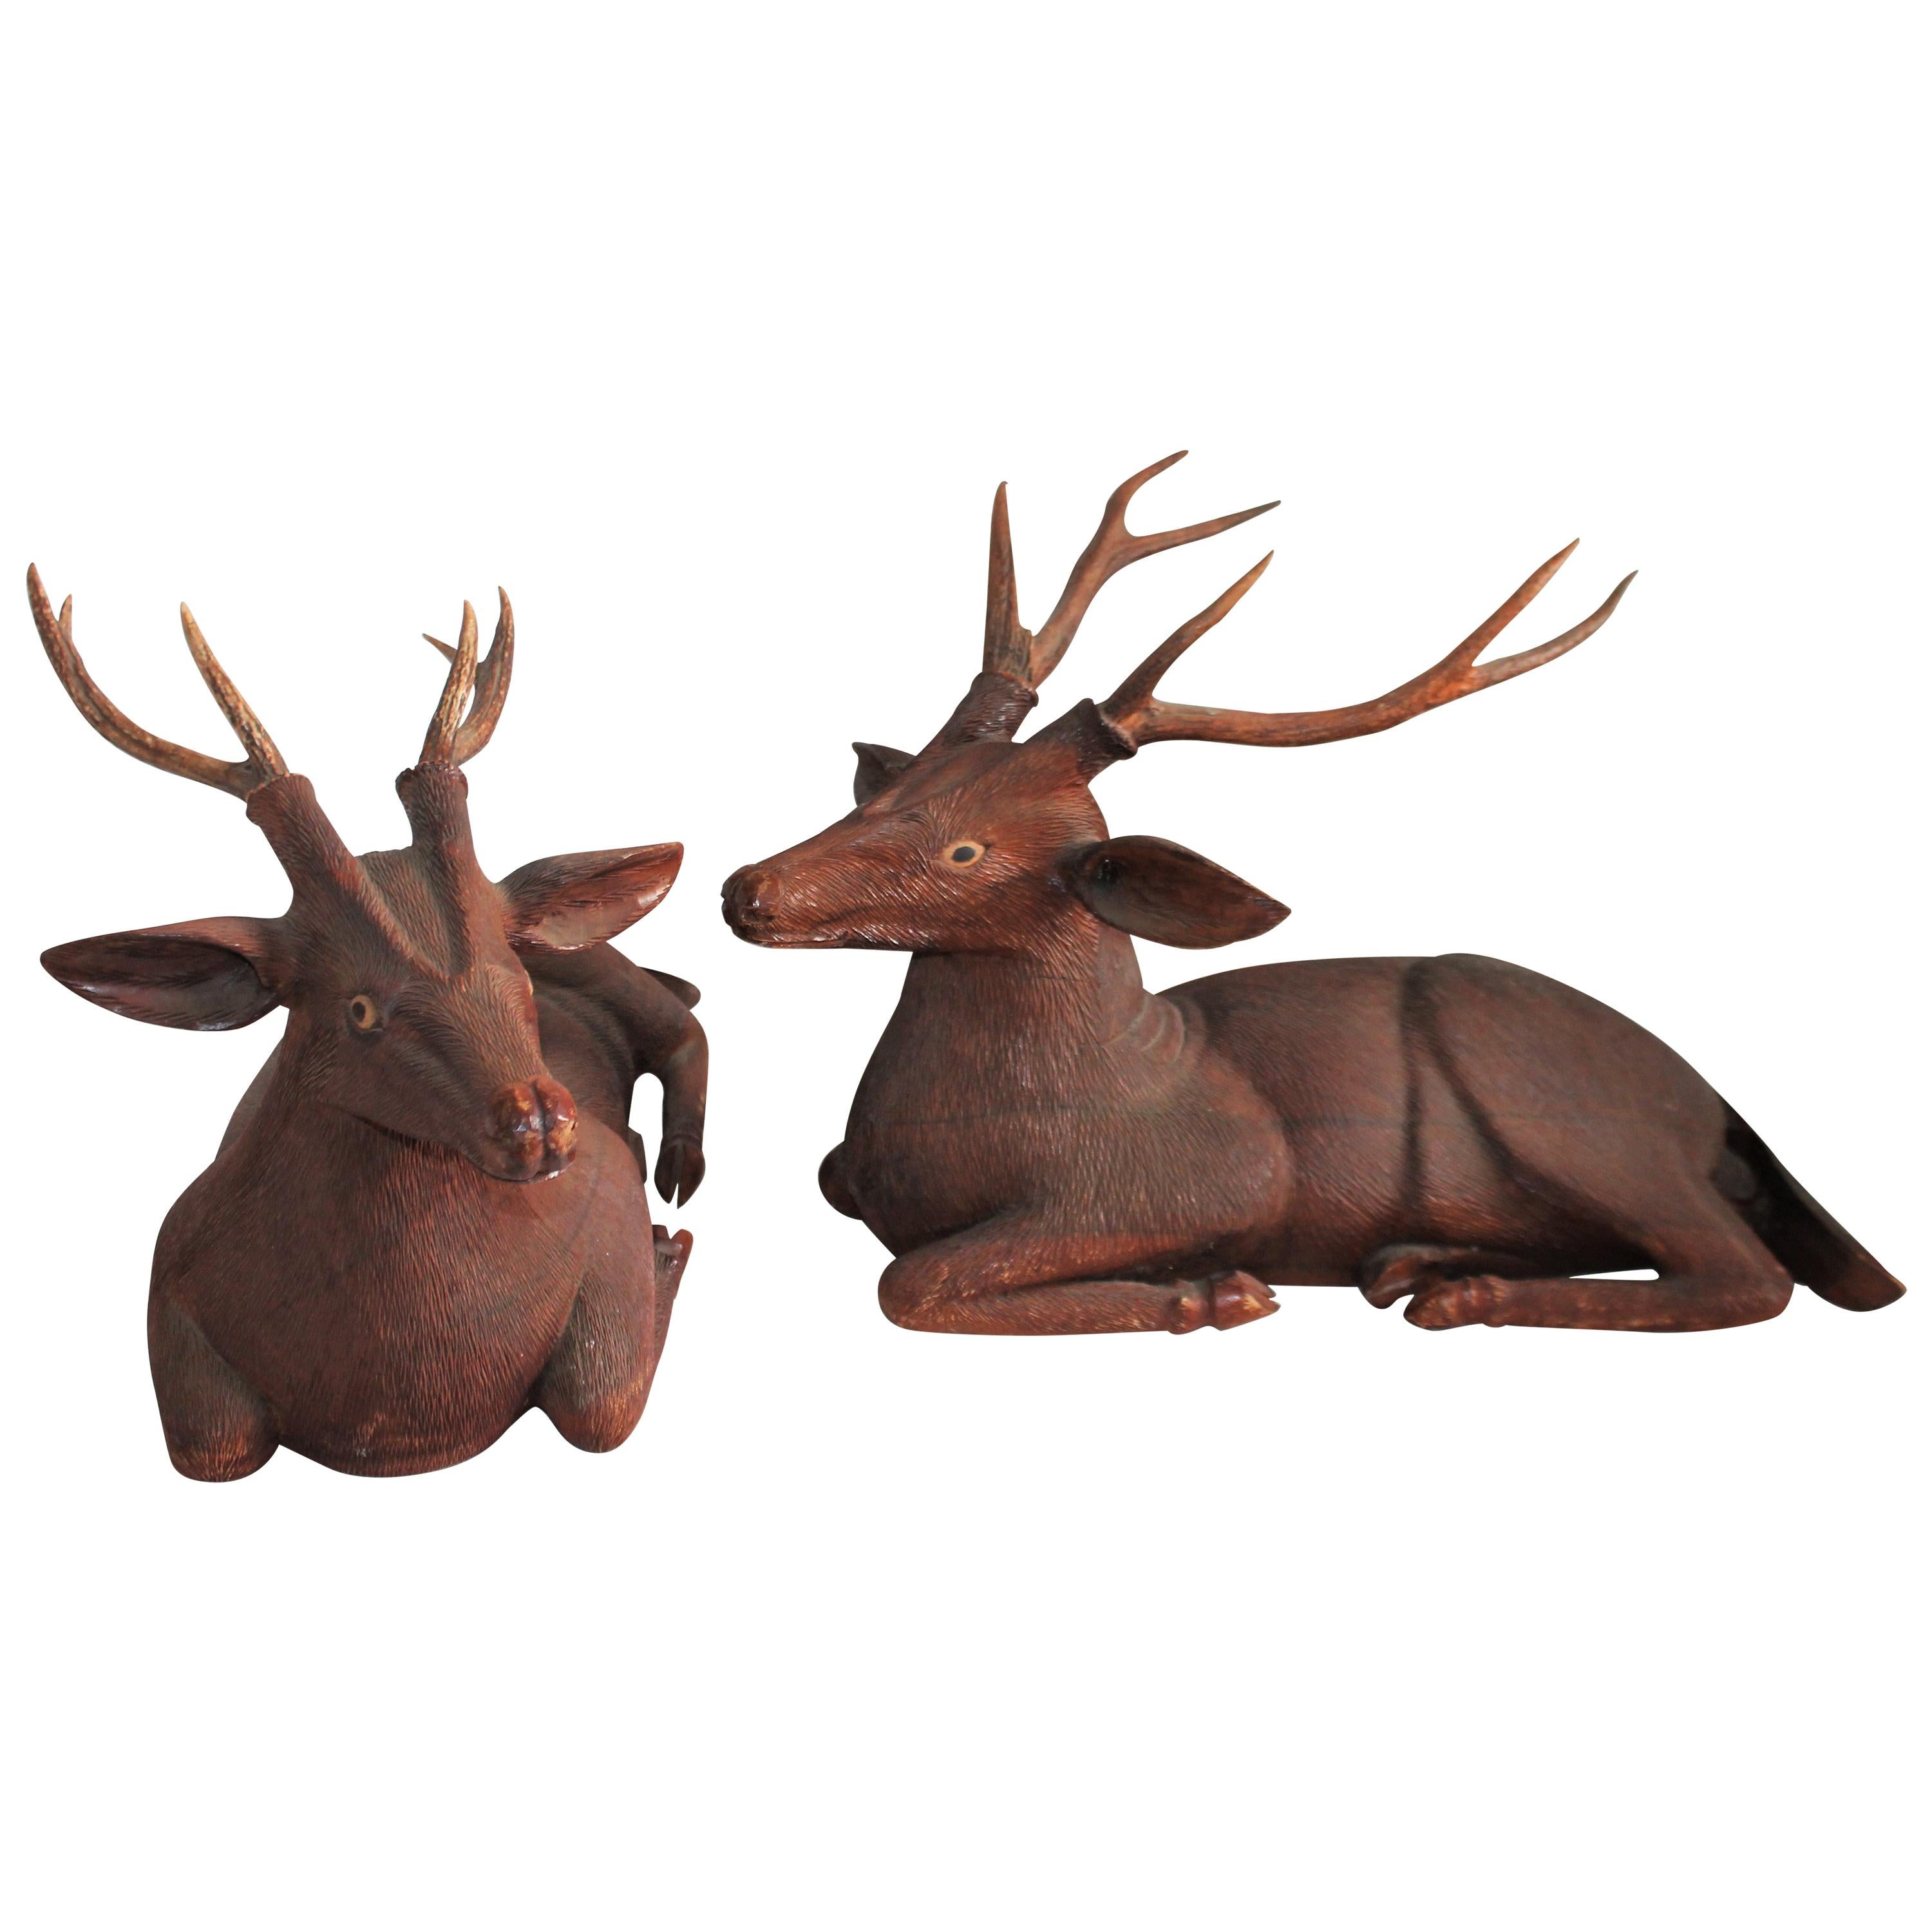 Pair of Carved Wood Folk Art Deer